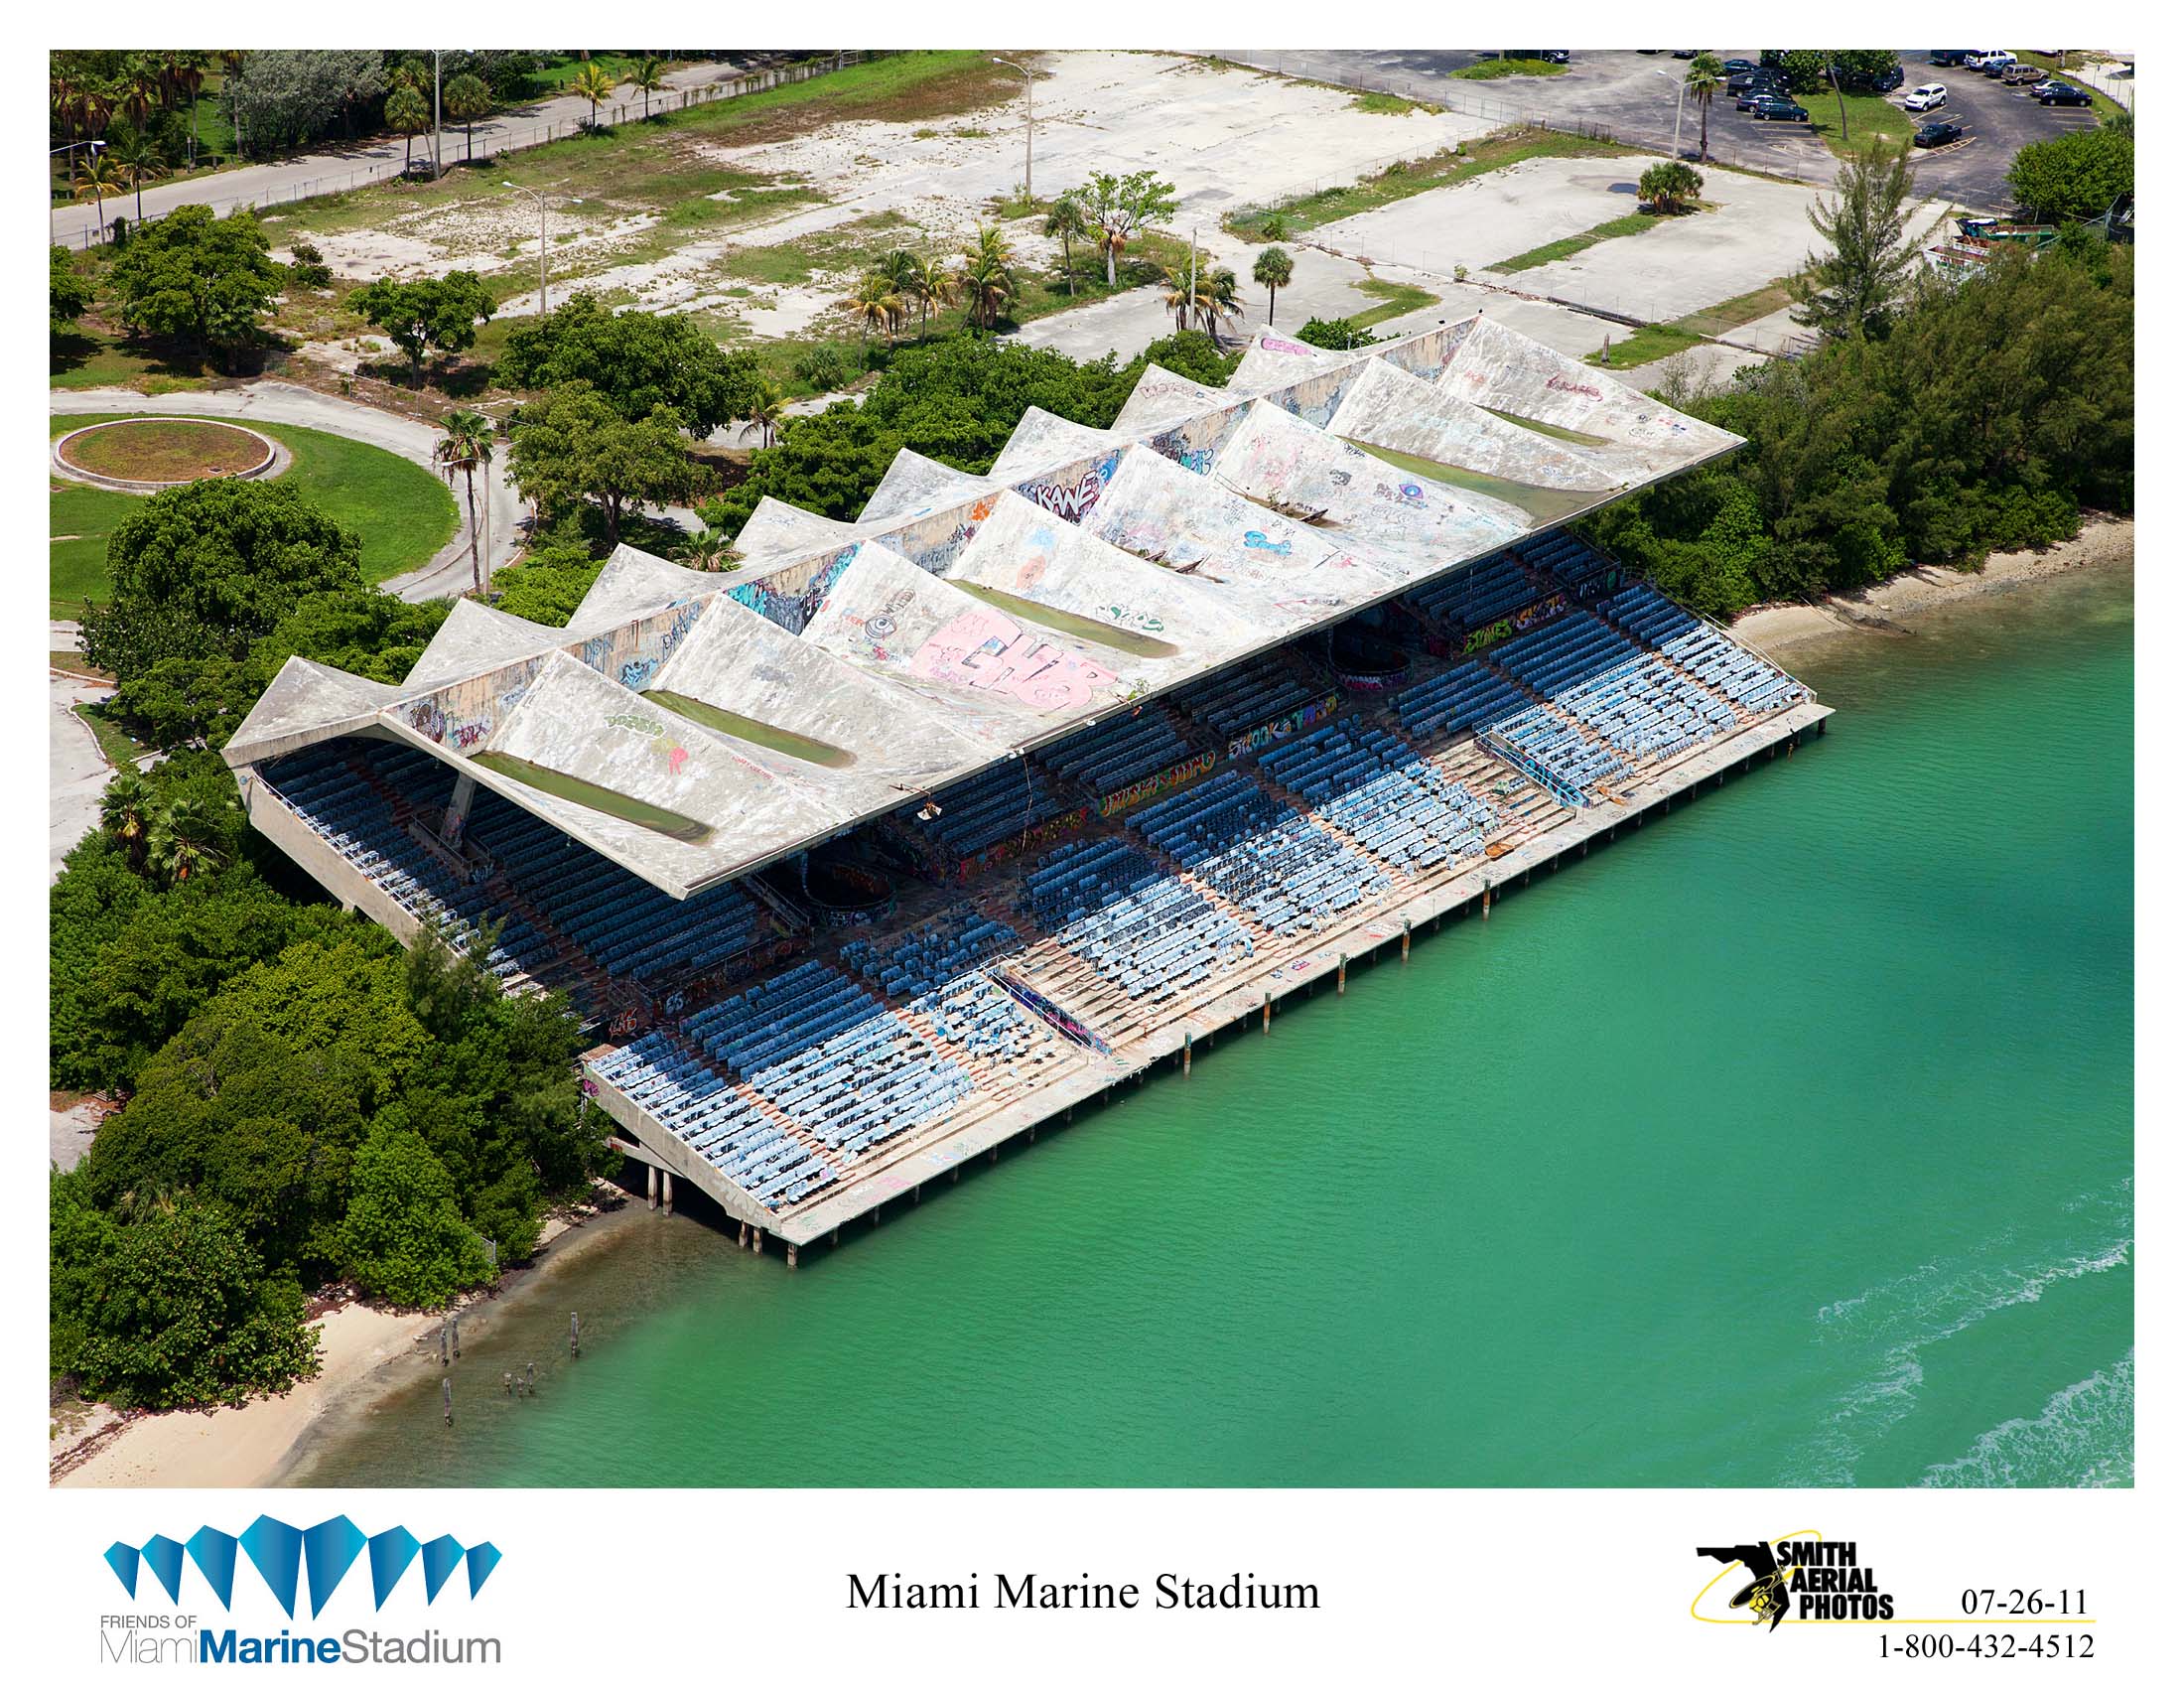 Louis Vuitton Fashion Show at Miami Marine Stadium - Miami Marine Stadium  Seat Art Repository